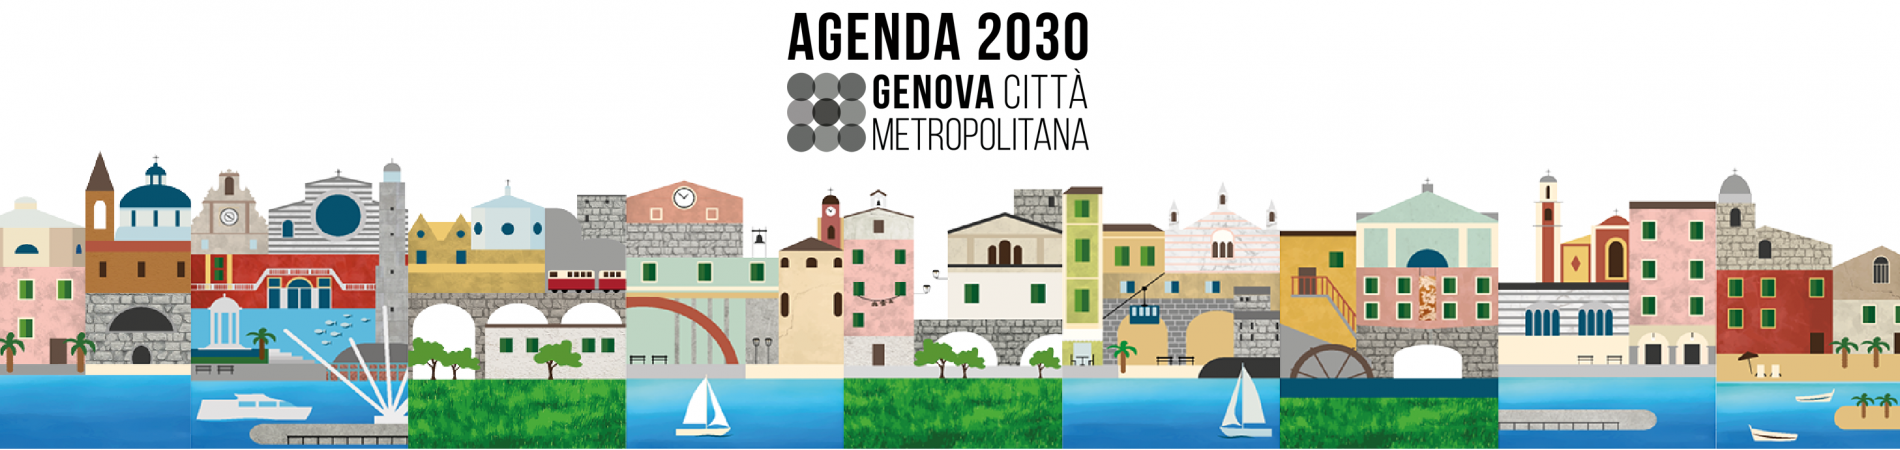 Agenda2030 di Genova Città Metropolitana